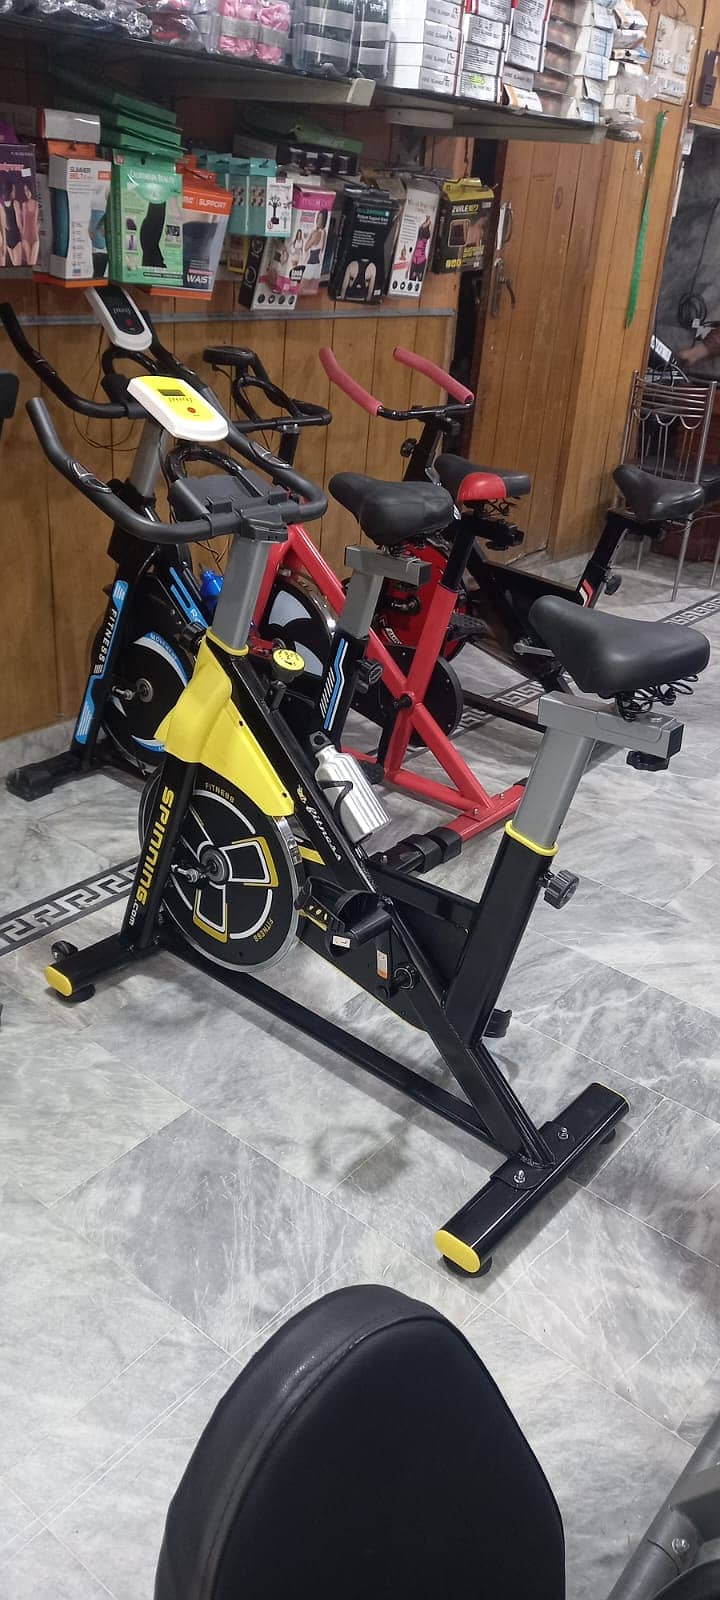 Exercise Spin bike, Recumbent Bike, Up Right Bike, treadmill, dumbbell 10